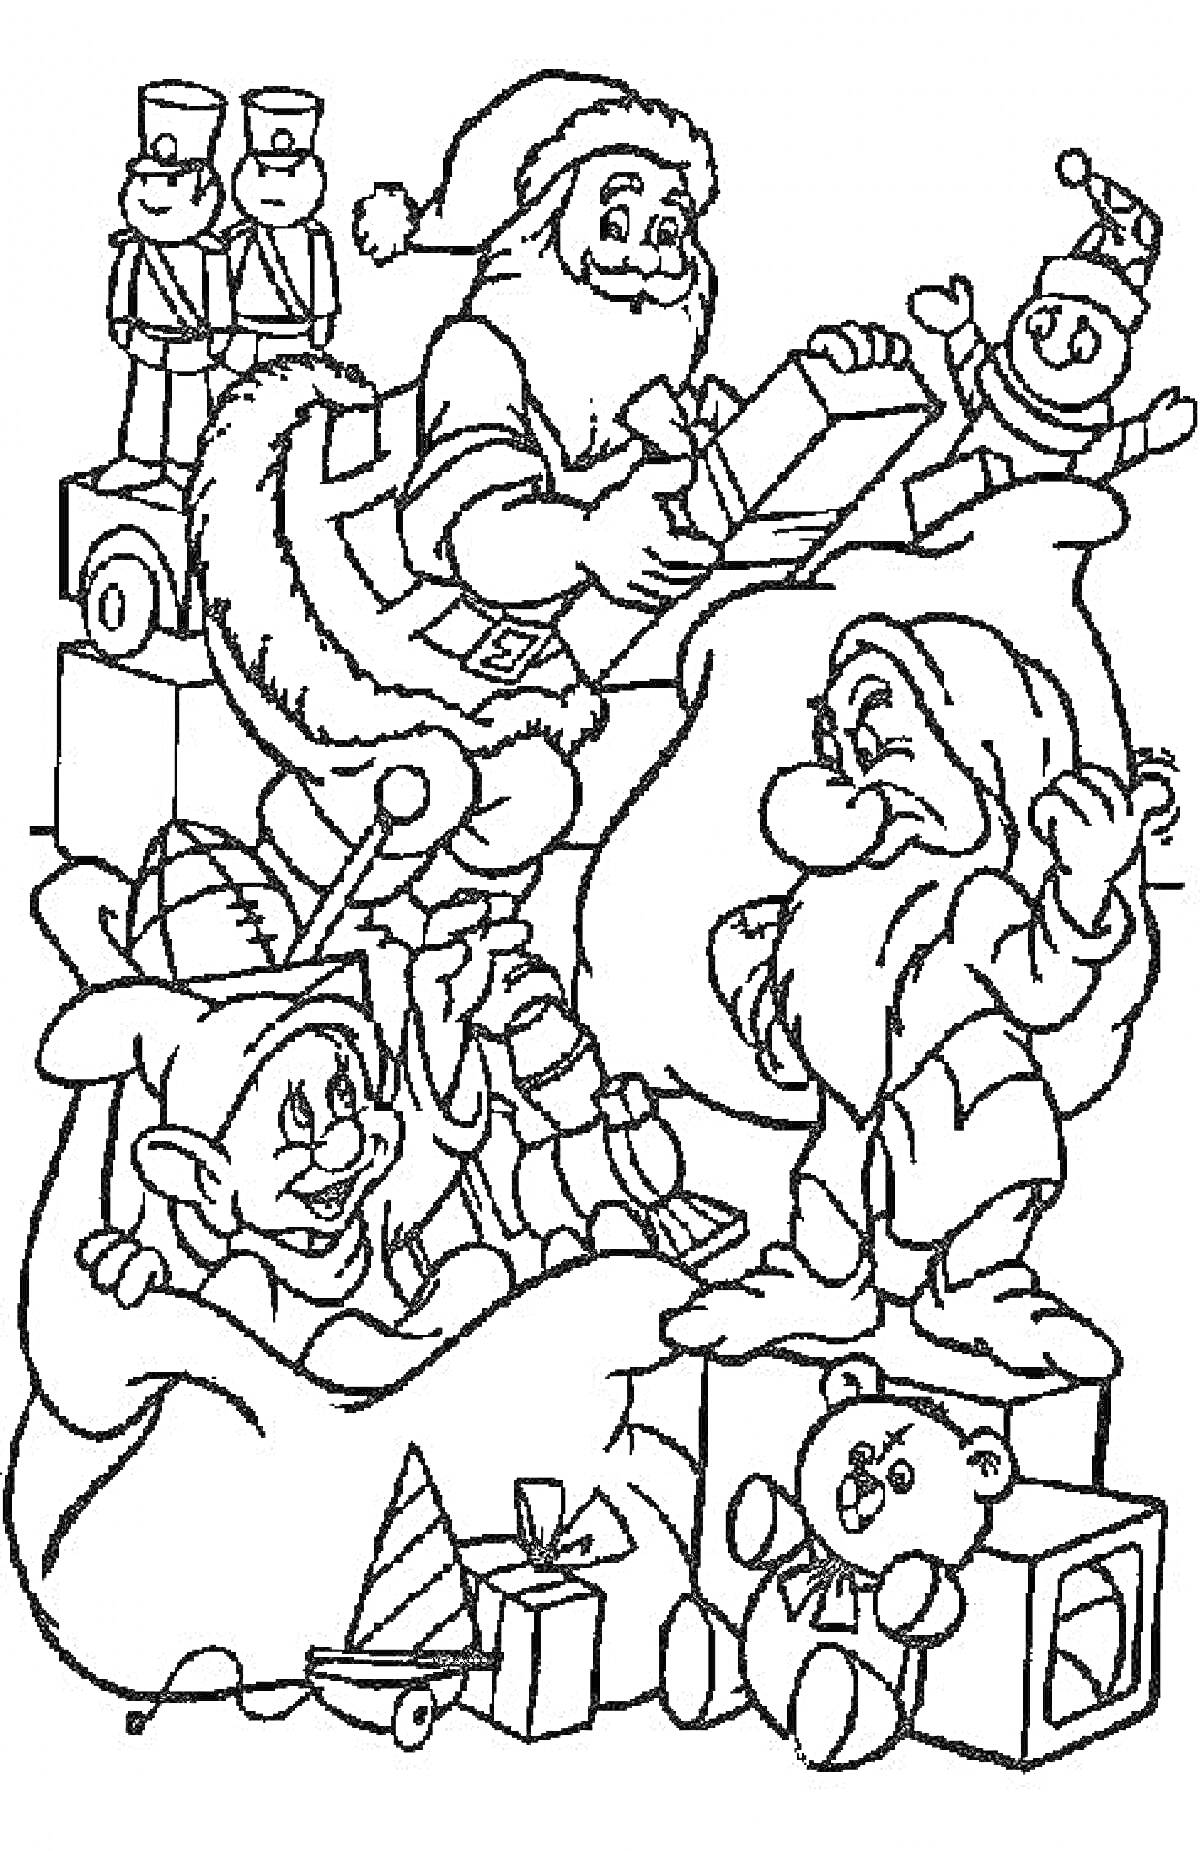 Раскраска Дисней на Новый год с Санта-Клаусом, эльфом, ворчливым гномом, игрушечным медведем, клоуном и подарками, а также игрушечными солдатиками.